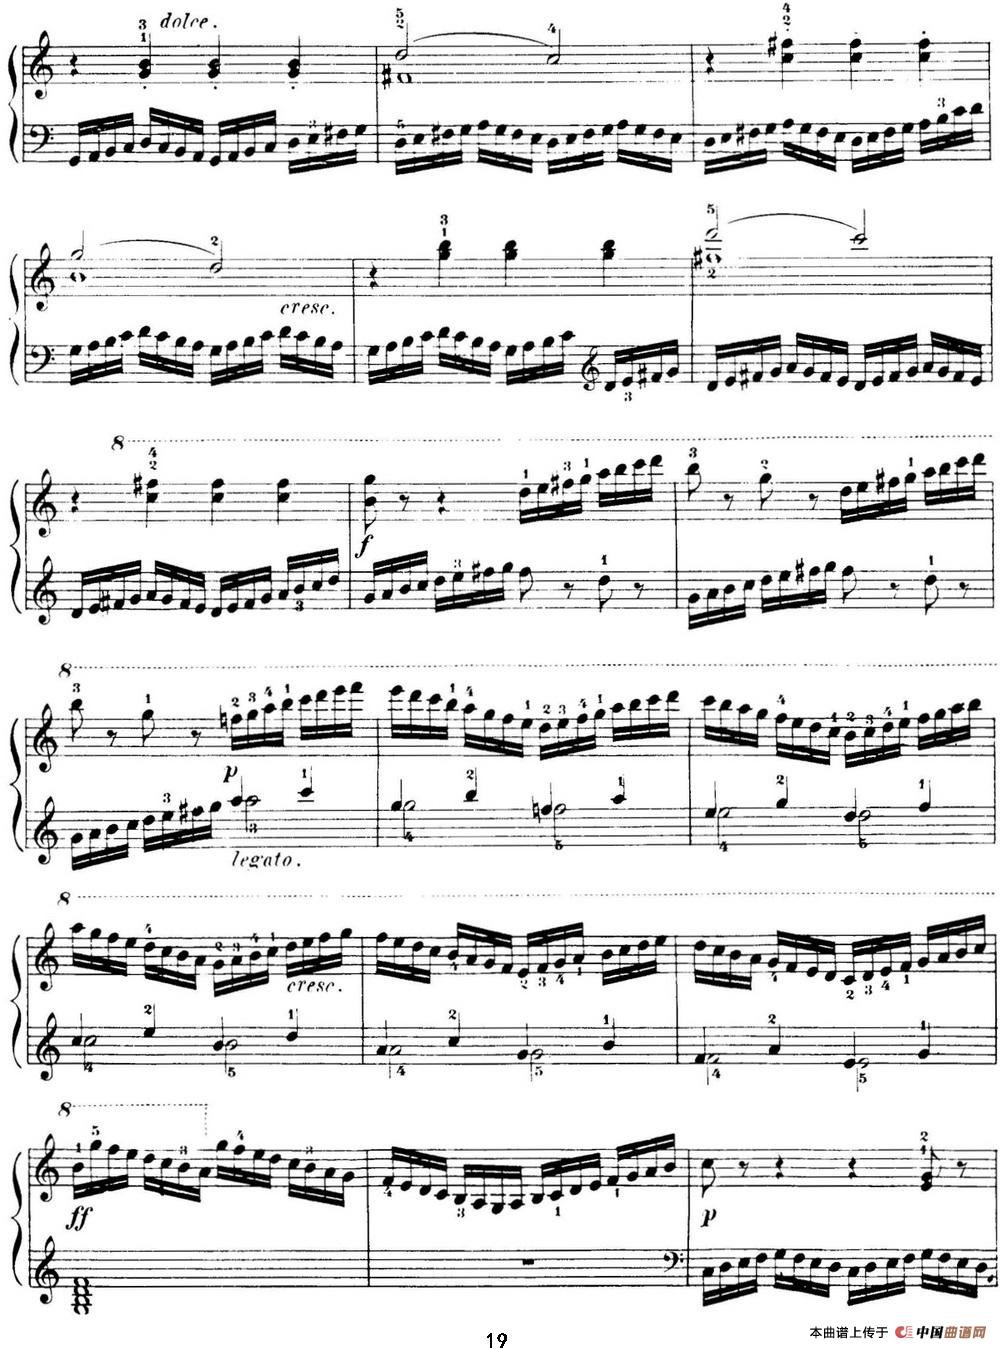 40首车尔尼Op.299钢琴快速练习曲（NO.9）(1)_C299_页面_019.jpg